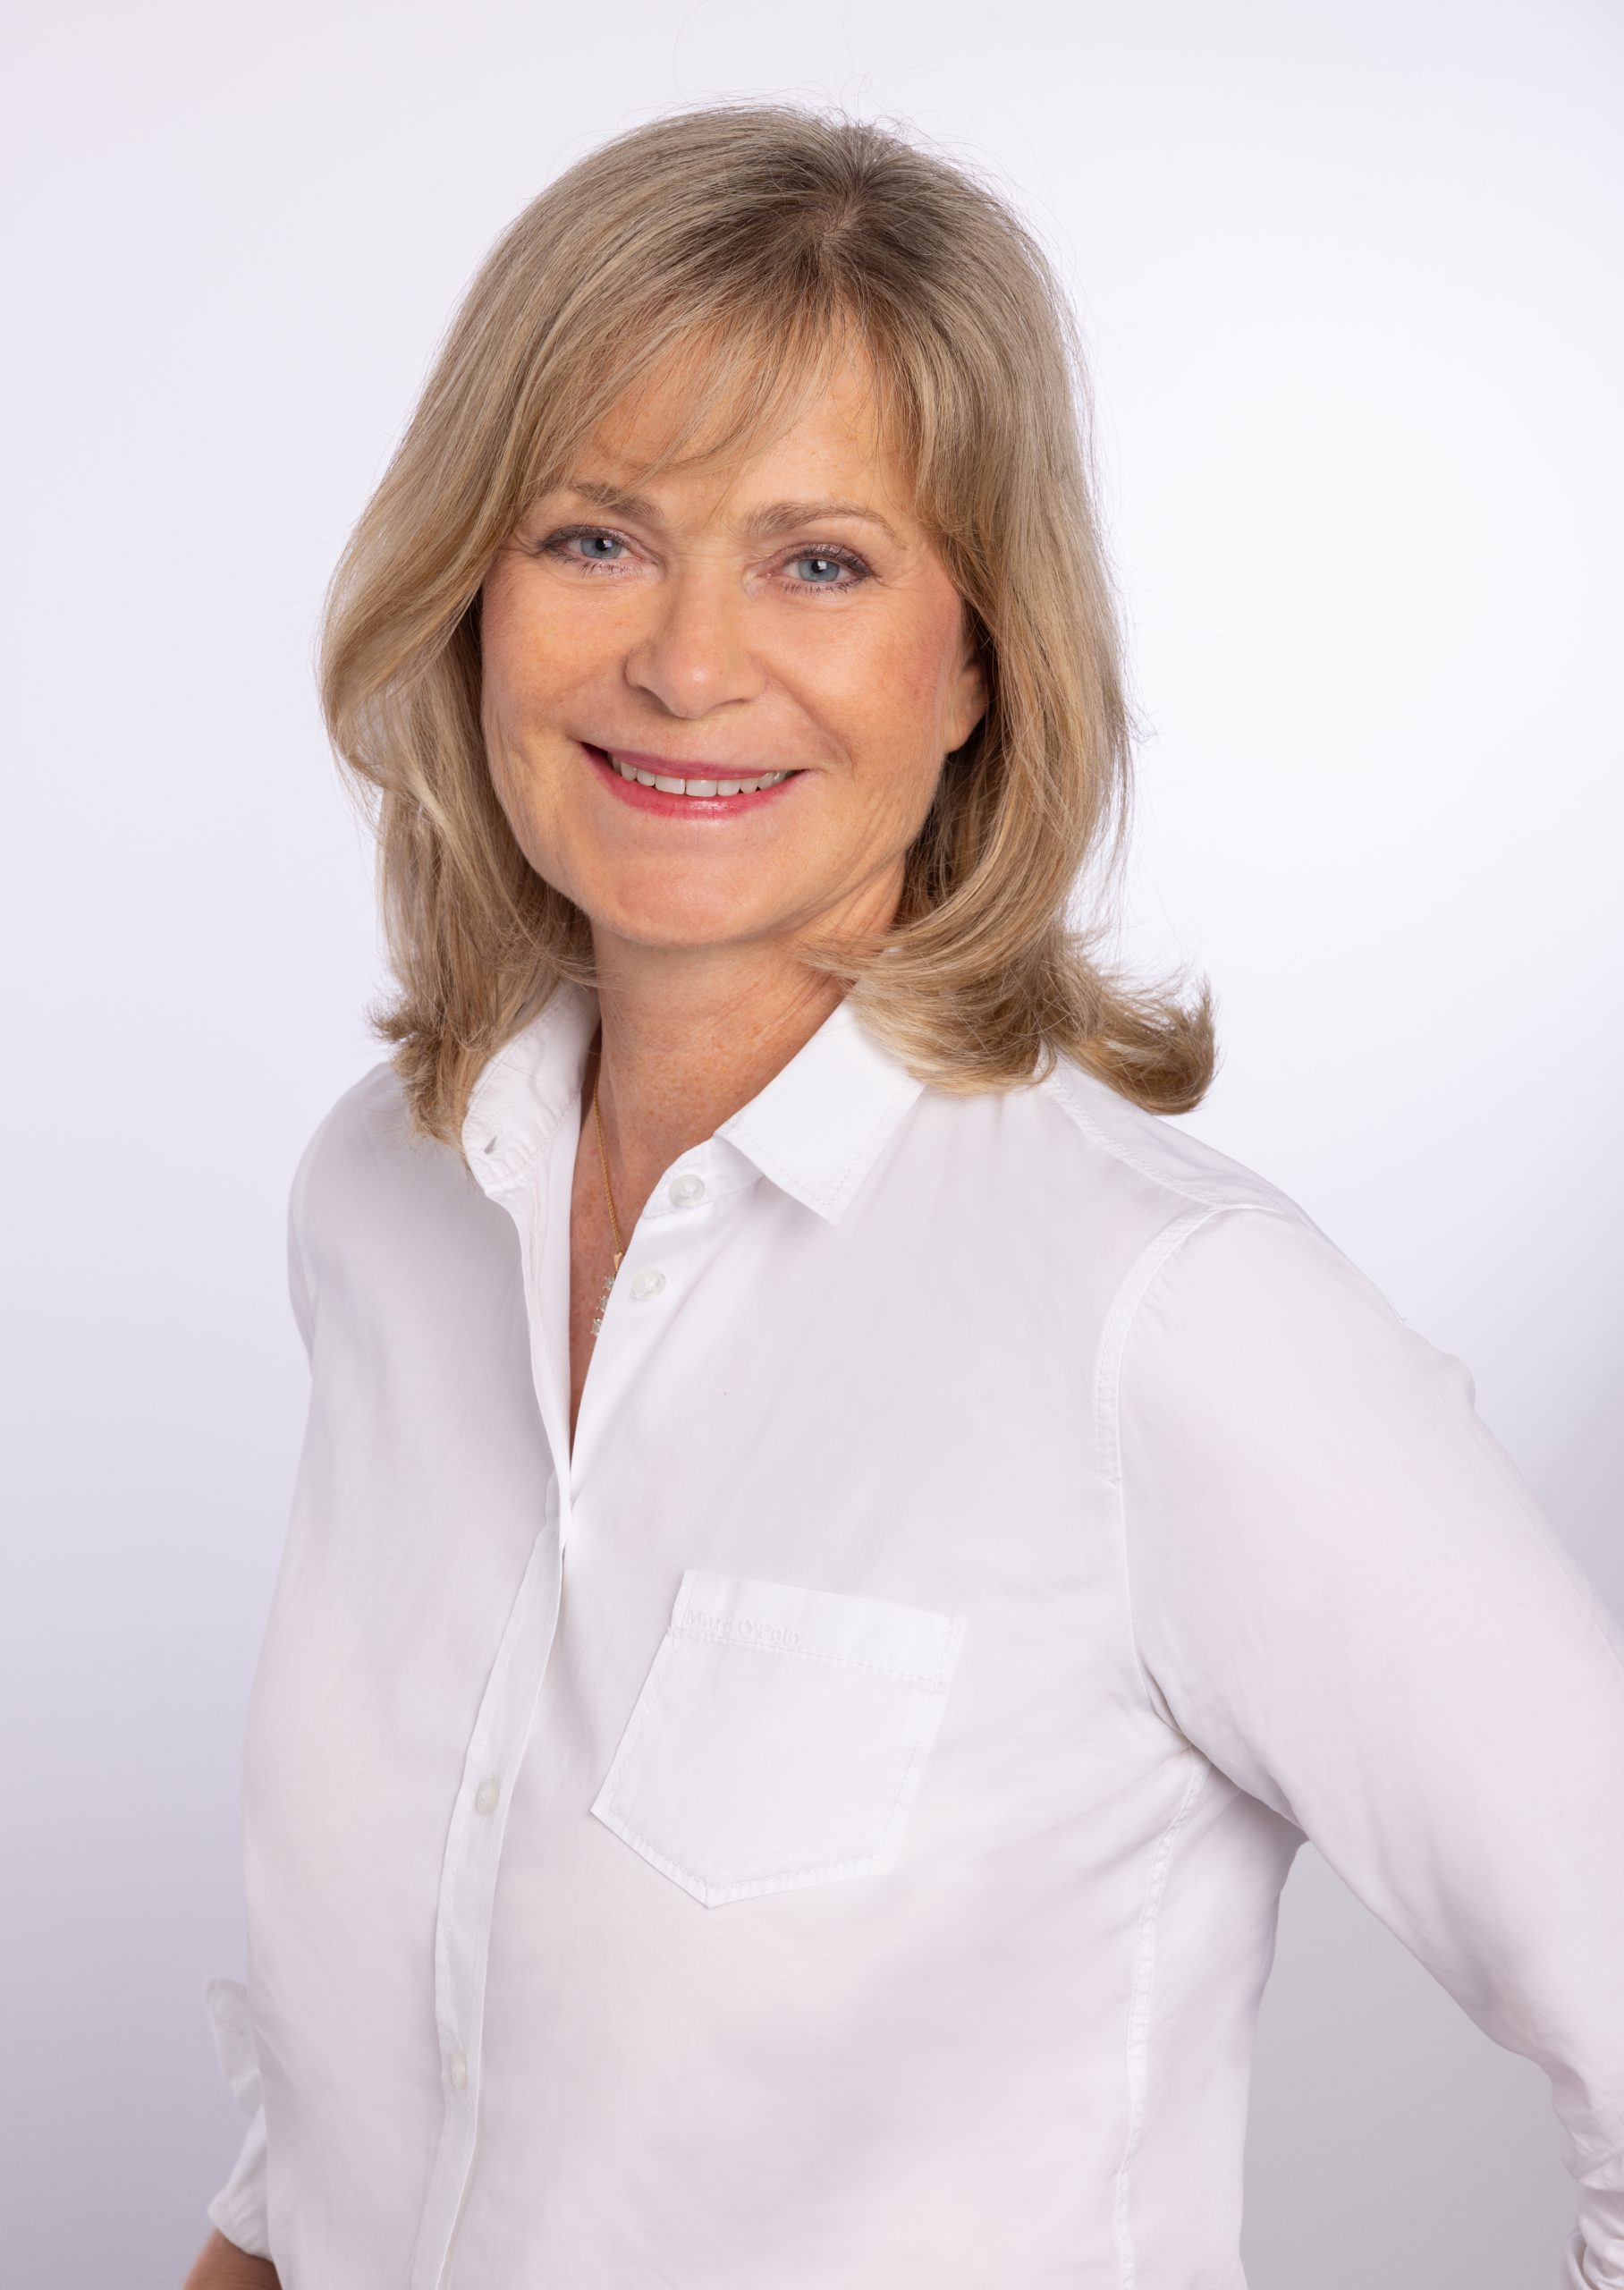 Dr. Lisa Nörenberg